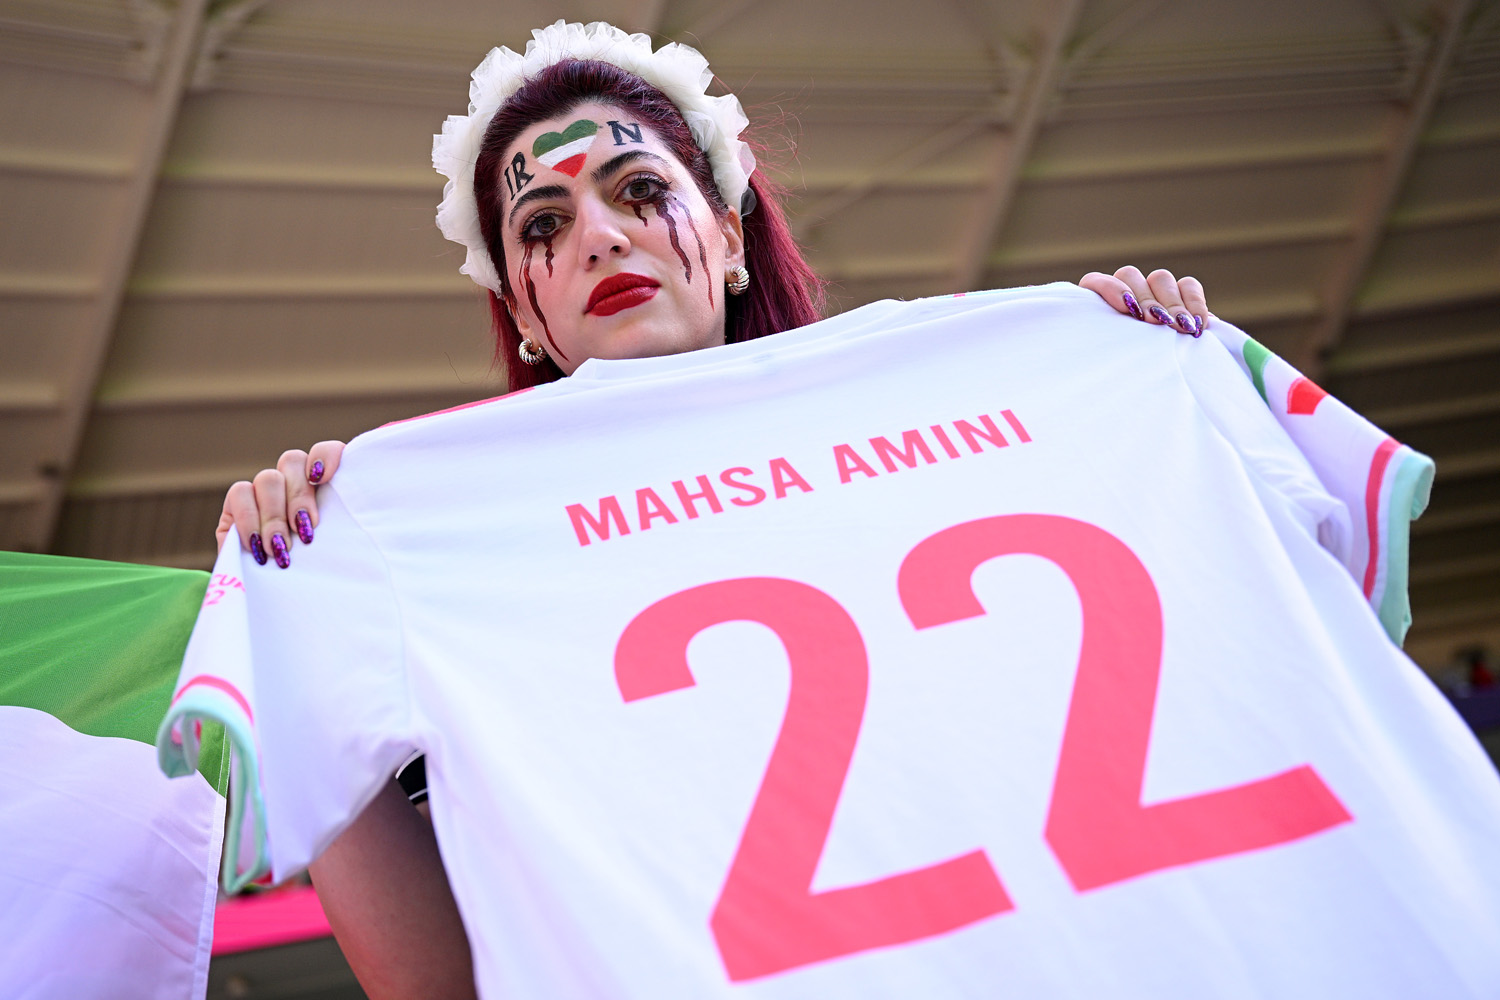 Egy iráni szurkoló Mahsa Amini nevével ellátott mezzel tüntet a női jogokért, a Wales-Irán mérkőzésen, 2022. november 25-én (Mahsa Amini volt az a nő, akit letartóztattak Teheránban hiányos öltözete miatt, majd a rendőrök később halálra verték) - Fotó: Matthias Hangst/Getty Images